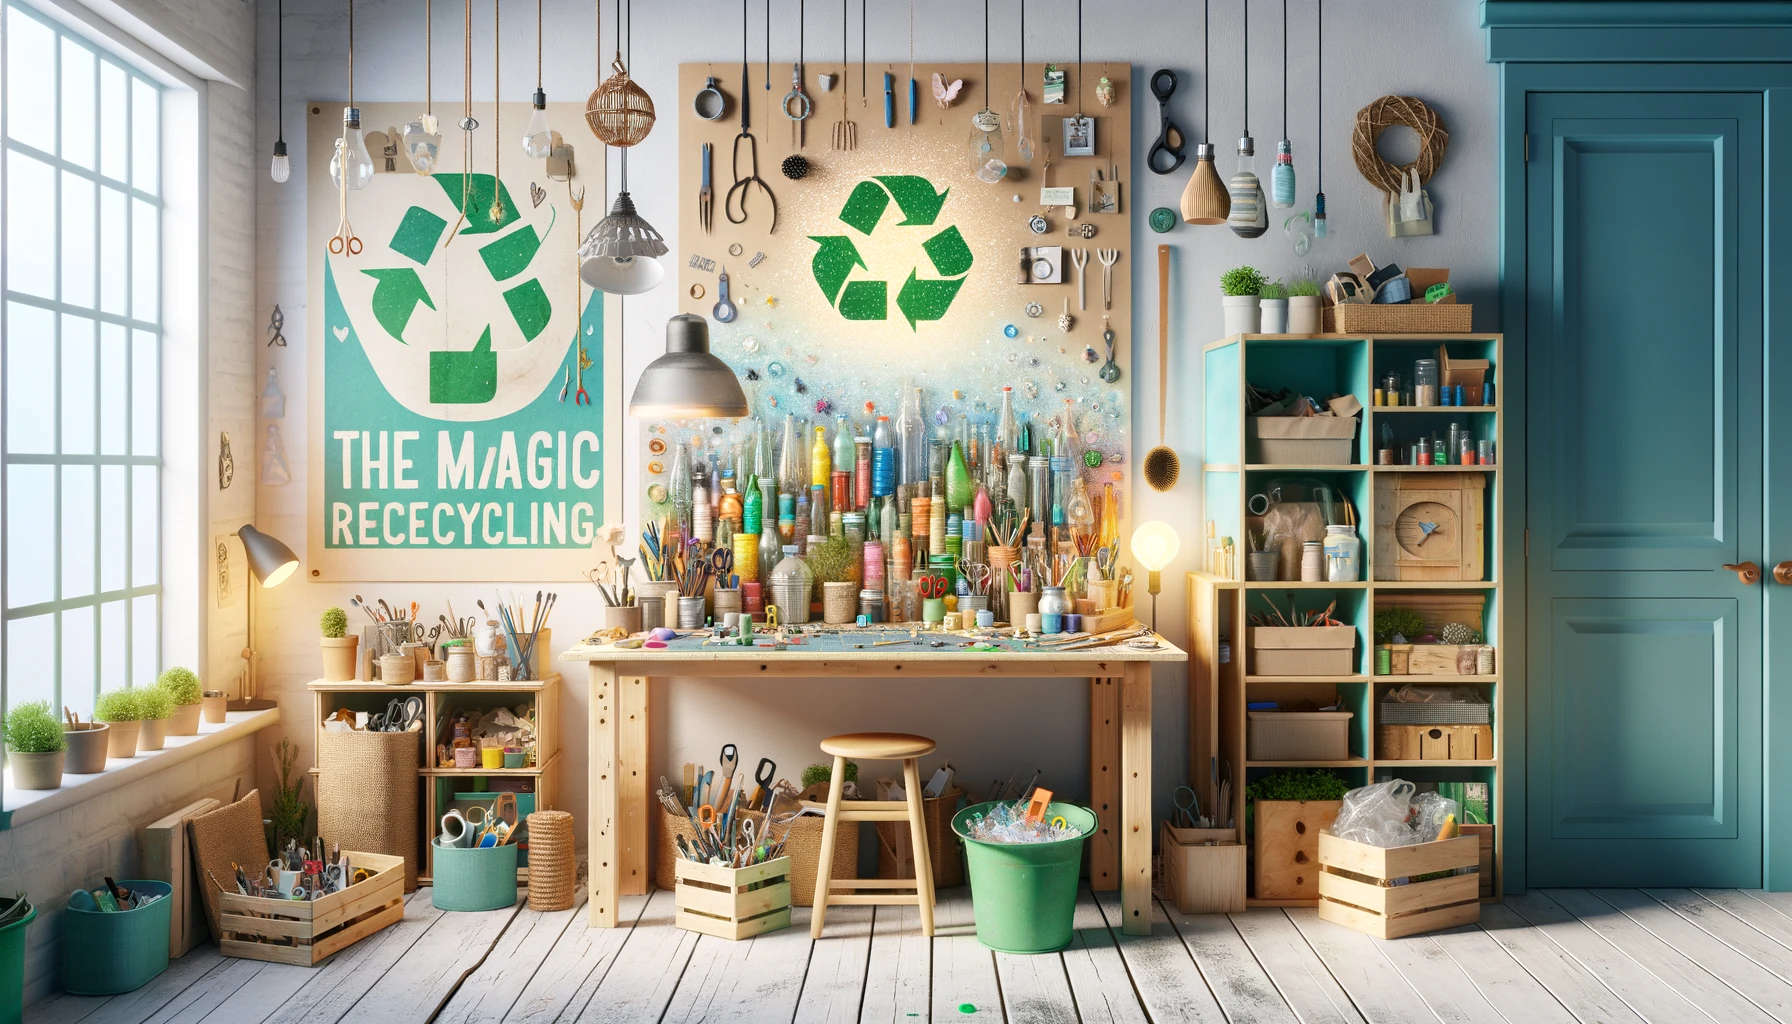 decouvrez-le-pouvoir-du-recyclage-comment-transformer-vos-dechets-du-quotidien-en-objets-diy-creatifs-et-ecologiques